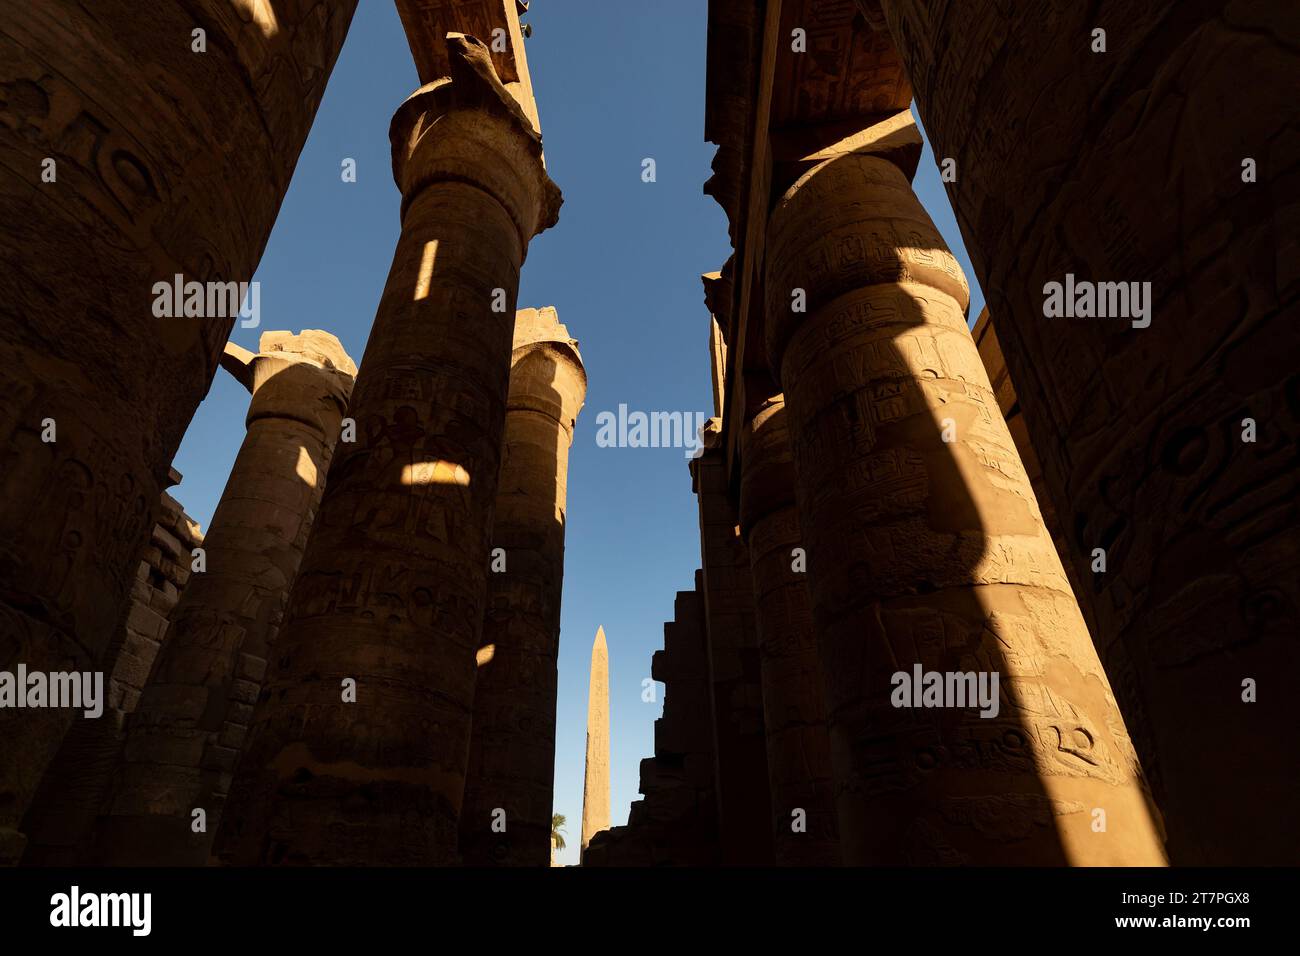 Obélisque géant dans les ruines antiques du complexe du temple de Karnak dans la ville du désert égyptien de Louxor Banque D'Images